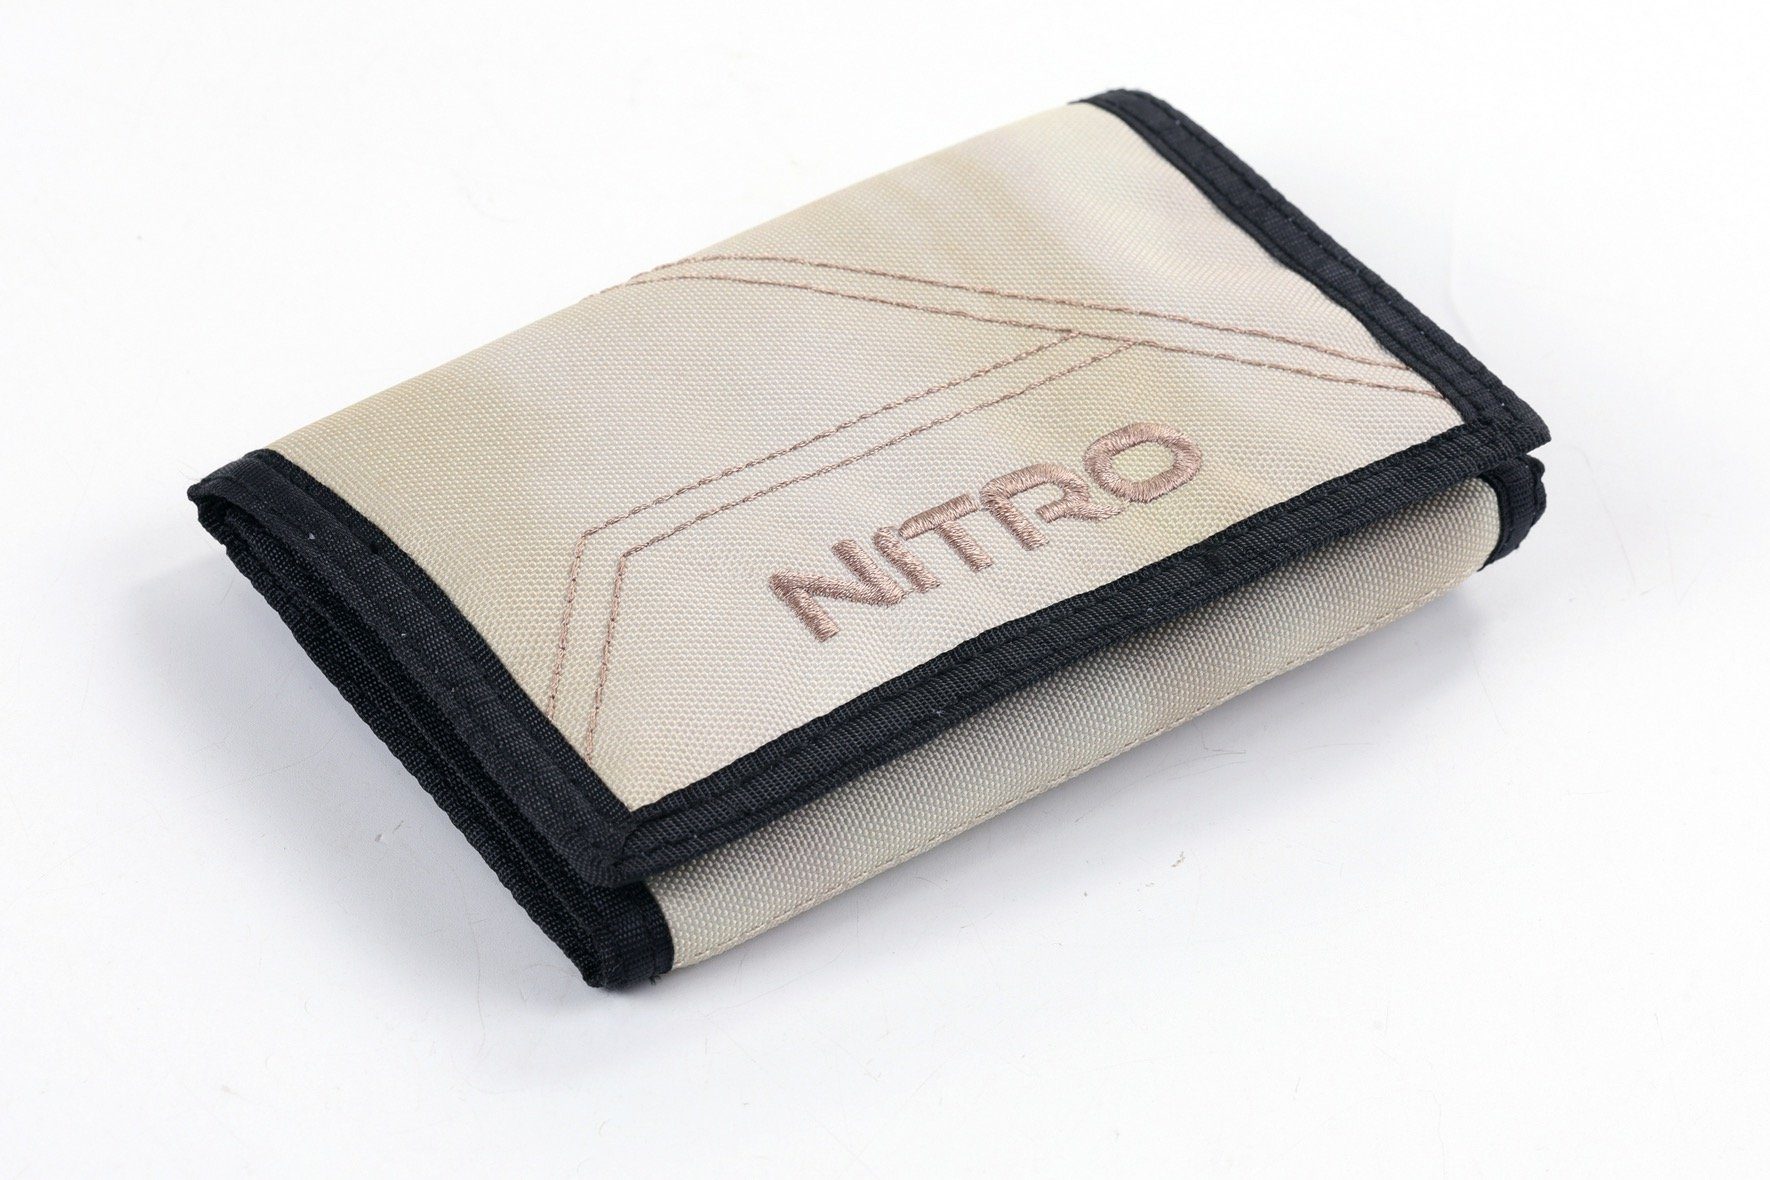 NITRO Geldbörse Wallet, Night Dune praktischem Sky, mit Schlüsselring